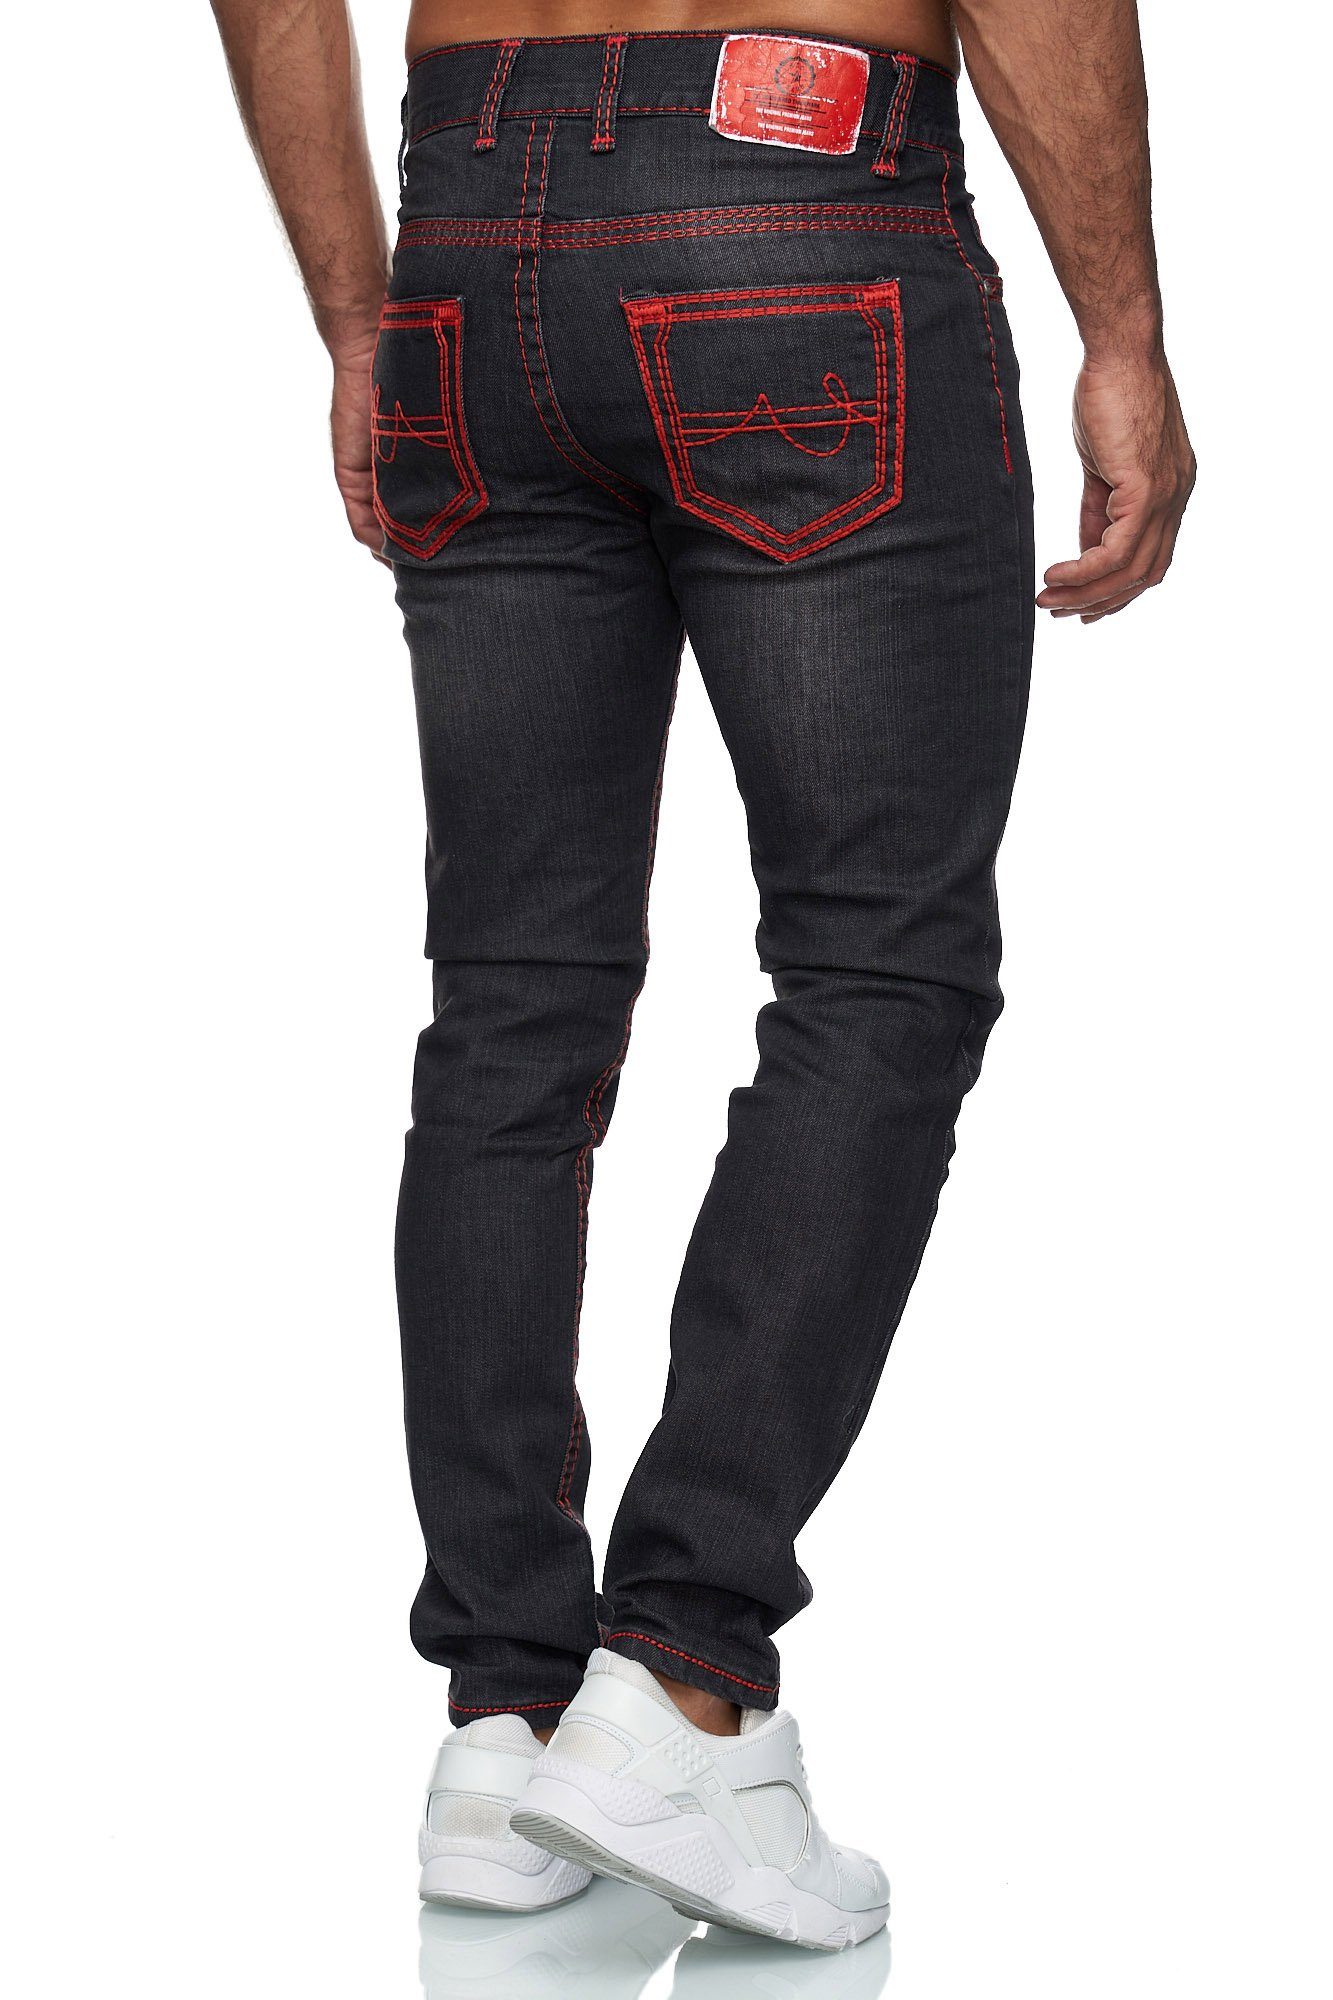 Baxboy Regular-fit-Jeans Herren Neon-Naht Stretch Straight 9574 Denim Fit Dicke Jeans Schwarz_Rot Stonewashed